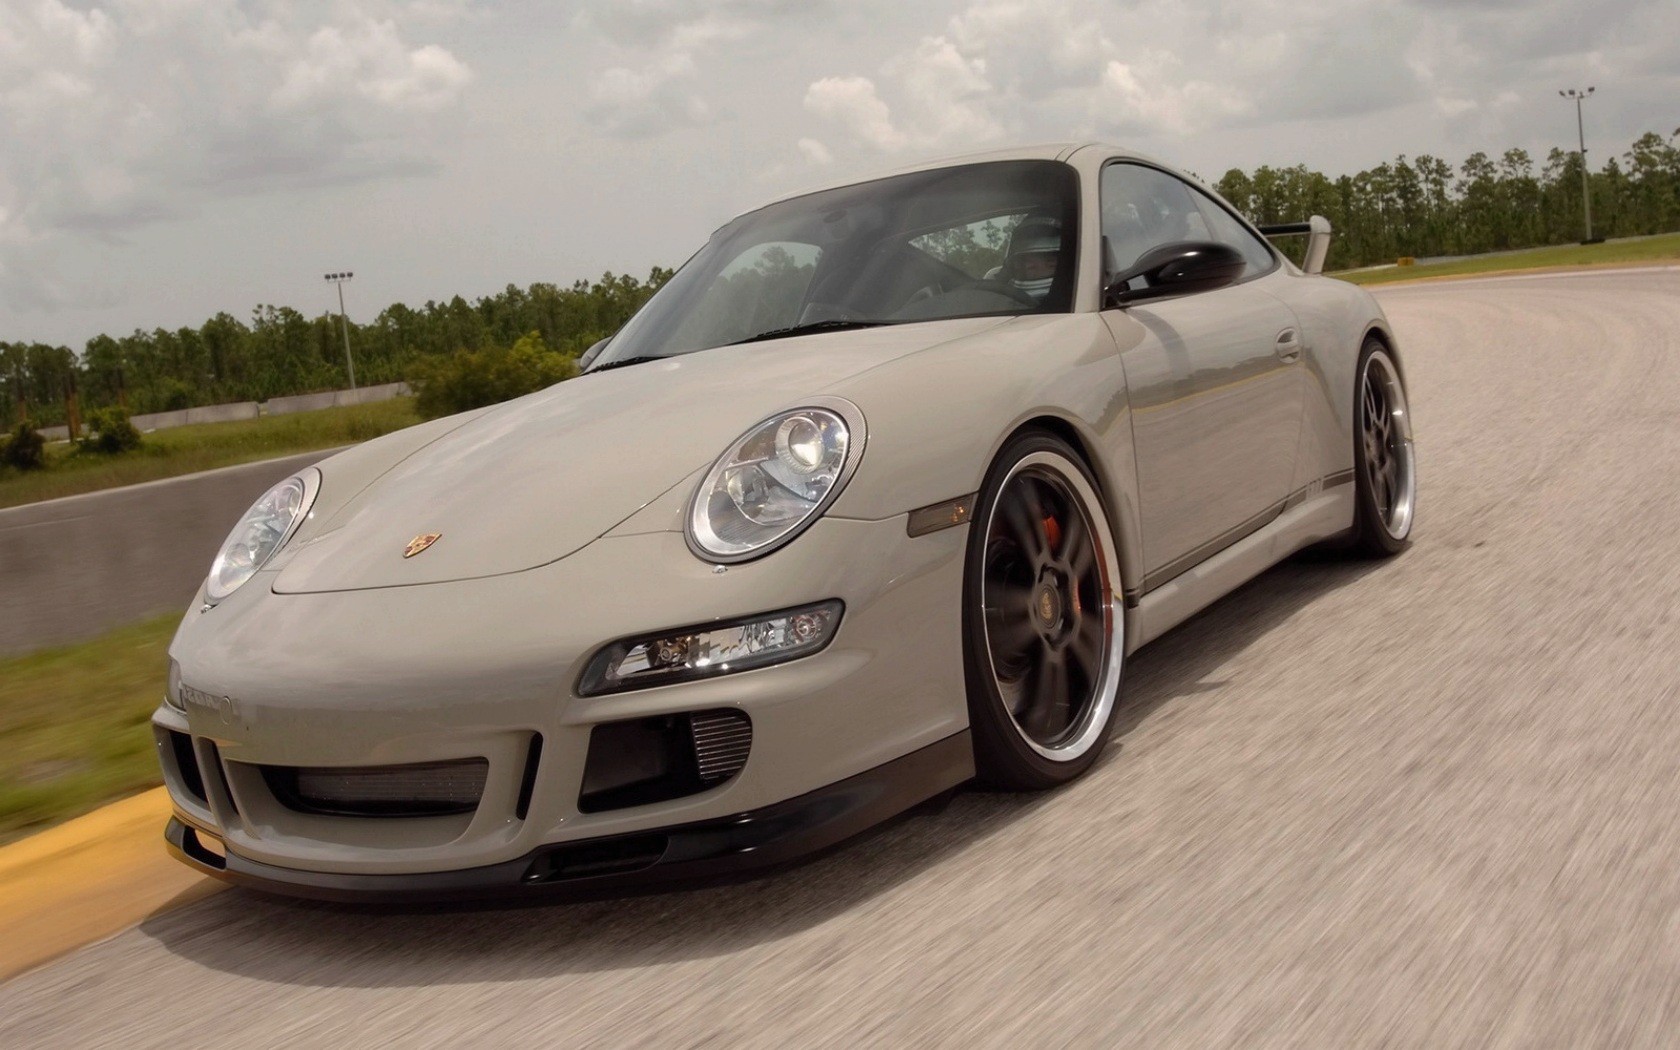 Descarga gratuita de fondo de pantalla para móvil de Porsche 911 Turbo, Porsche, Vehículos.